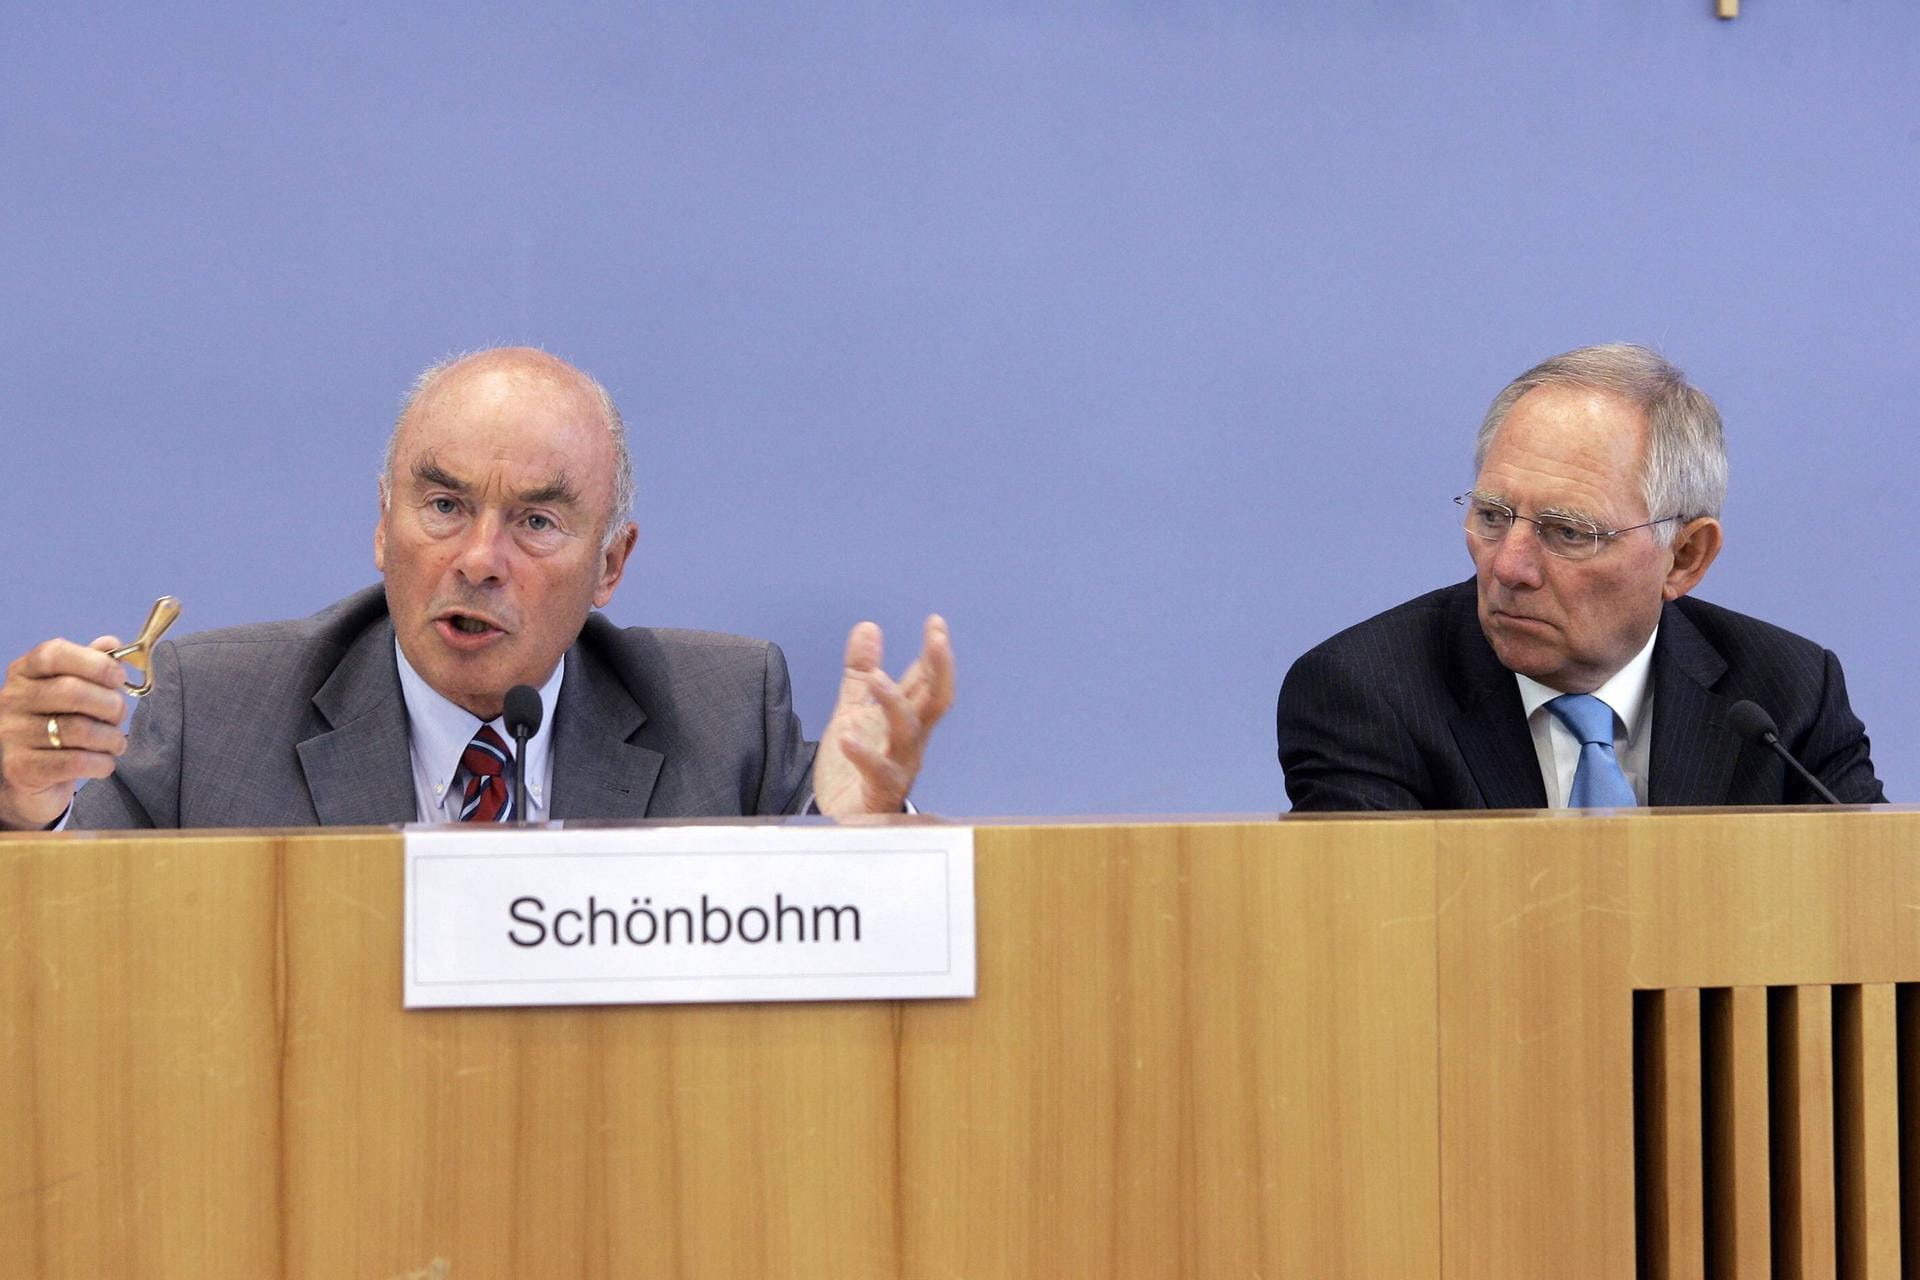 Mai 2008: Schönbohm und der damalige Innenminister Wolfgang Schäuble bei der Vorstellung der polizeilichen Kriminalstatistik 2007.